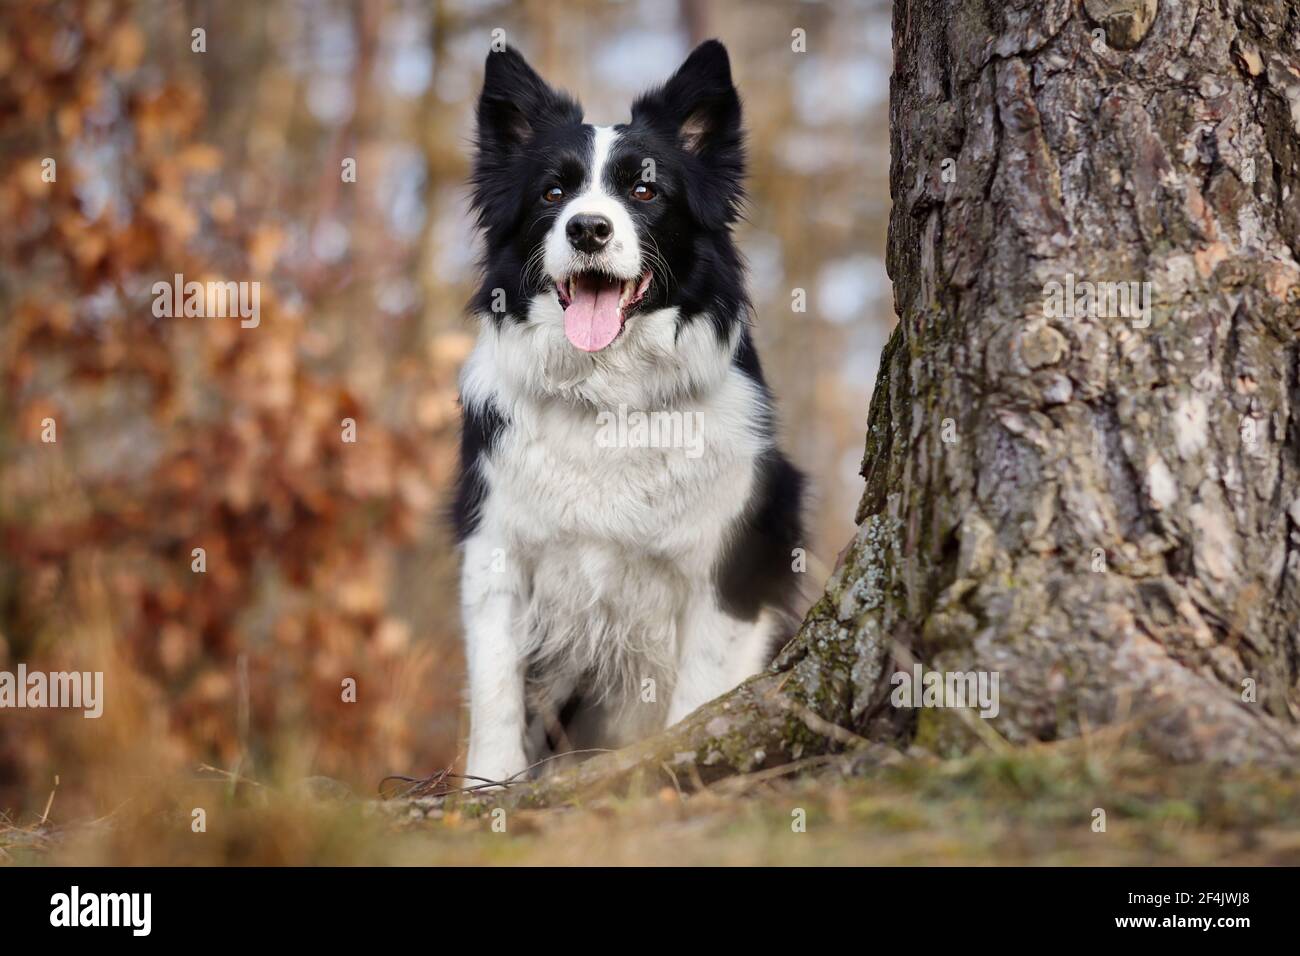 Gros plan de la bordure assise de Collie à côté du tronc d'arbre dans la forêt d'automne. Adorable chien noir et blanc avec sa langue dans la nature. Banque D'Images